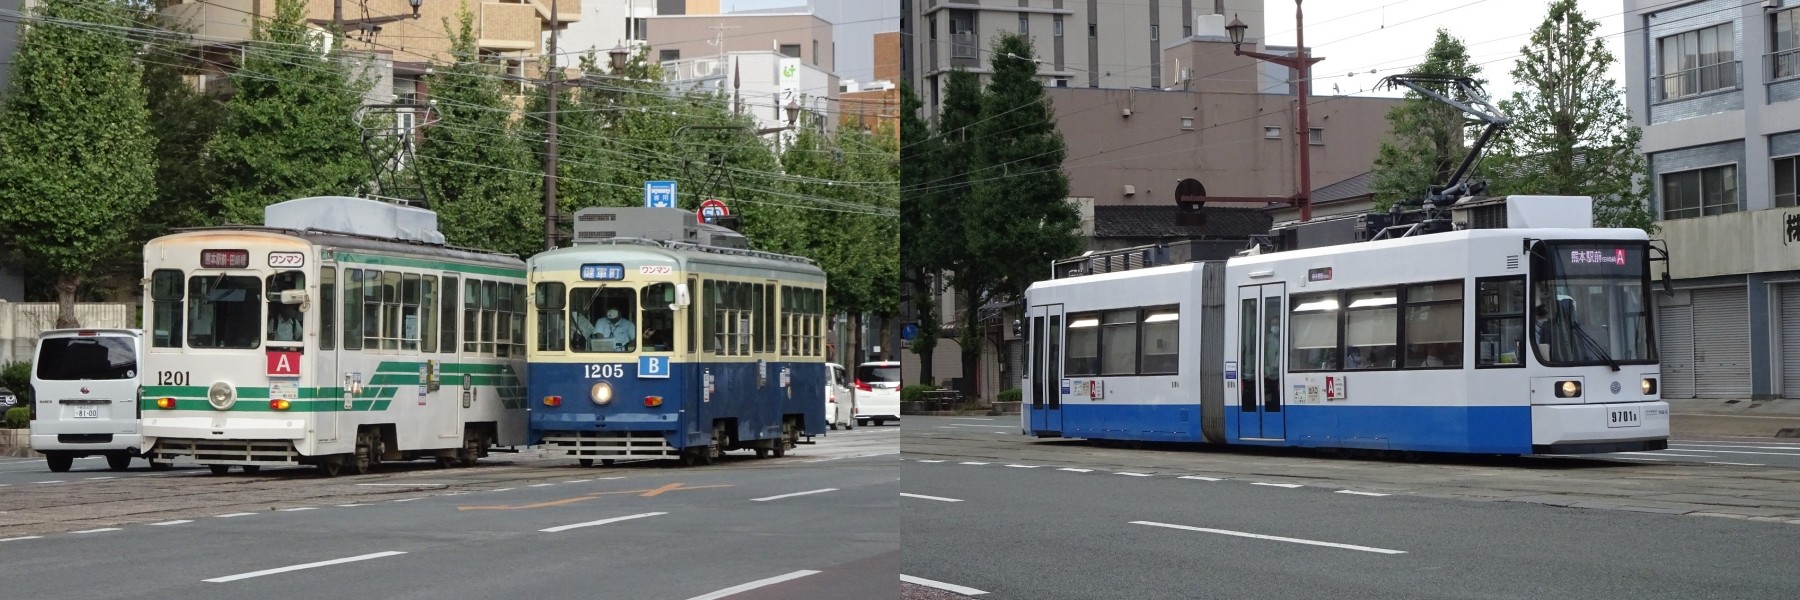 The Kumamoto City Tram running in Kyushu and Kumamoto City